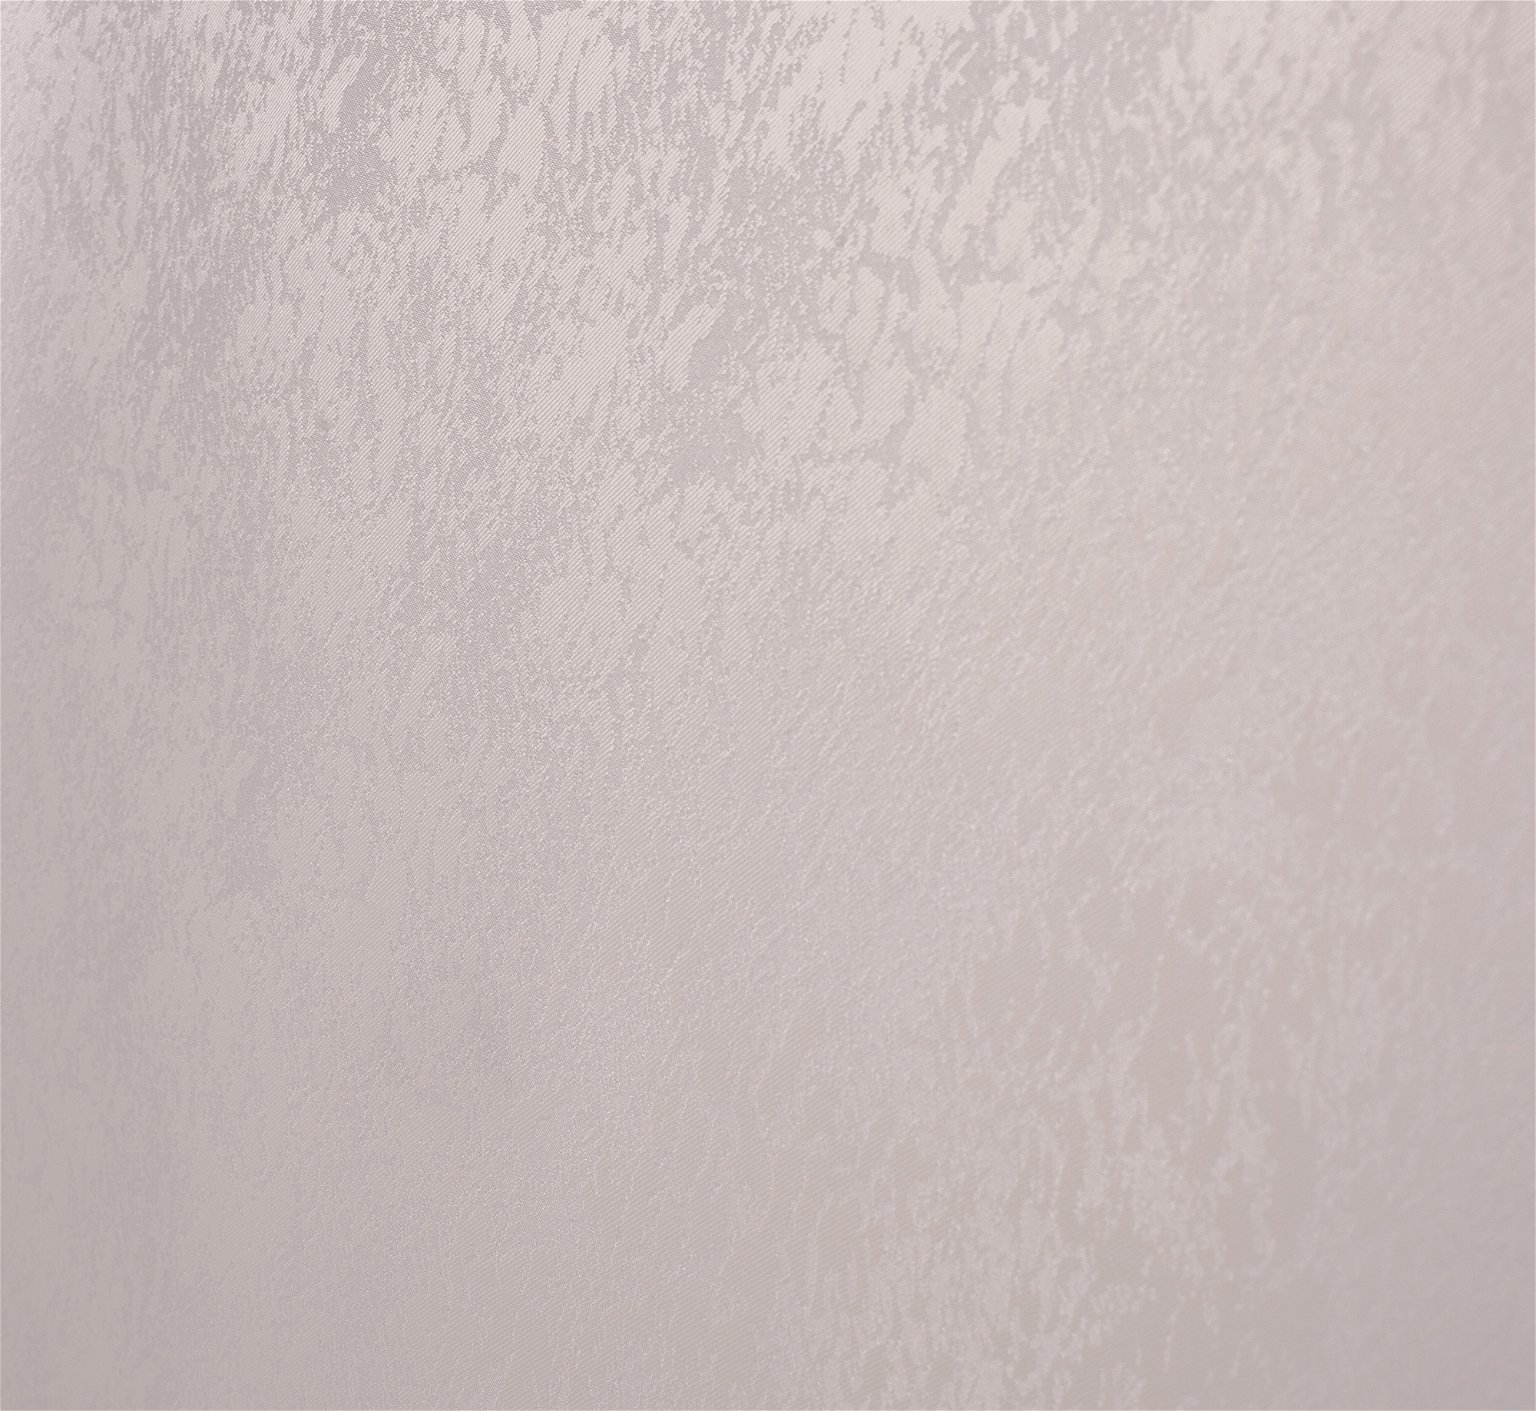 Klasikinė ritininė užuolaida LONDON, kreminės sp., 220 x 170 cm, 100 % poliesteris - 2